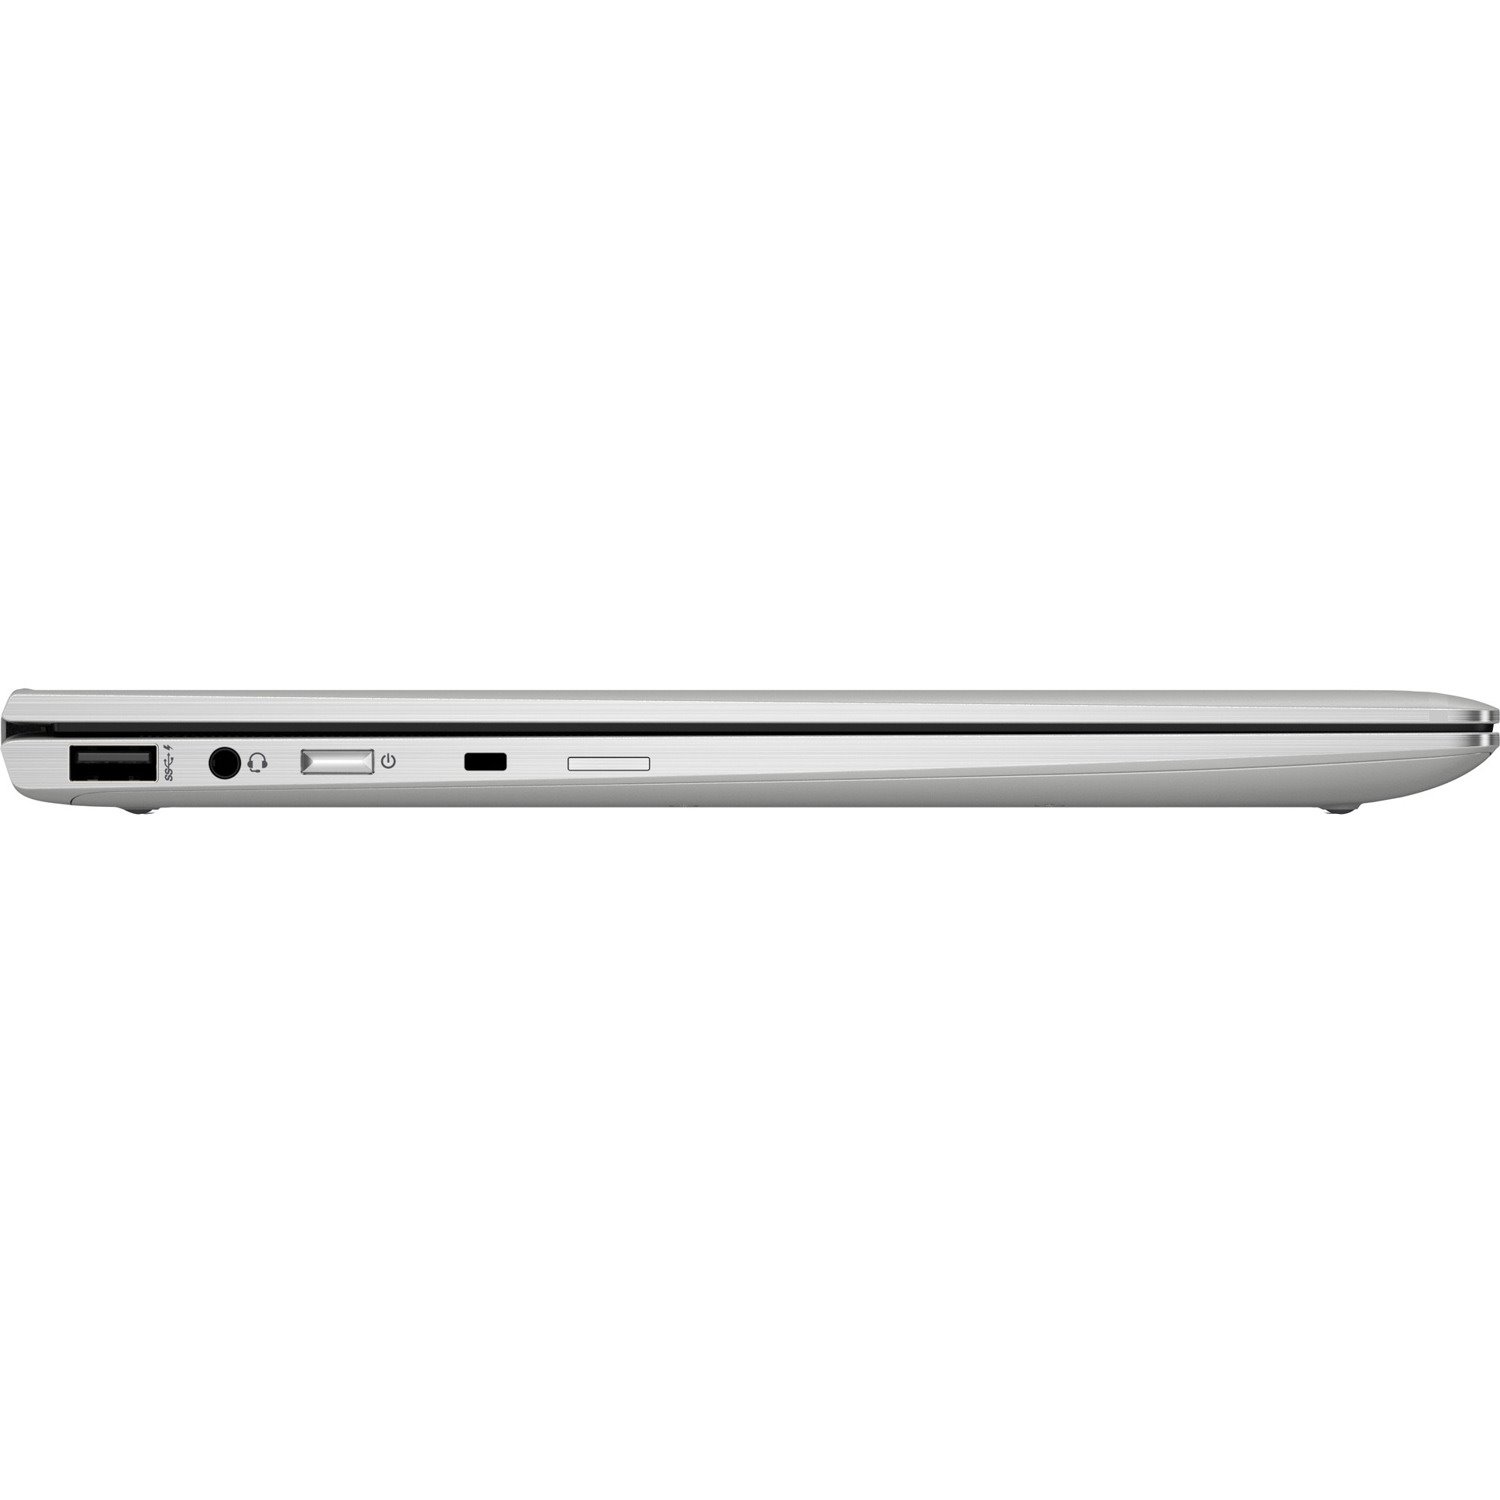 HP EliteBook x360 1040 G6 14" Touchscreen Convertible 2 in 1 Notebook - Intel Core i5 8th Gen i5-8265U Quad-core (4 Core) 1.60 GHz - 8 GB Total RAM - 256 GB SSD